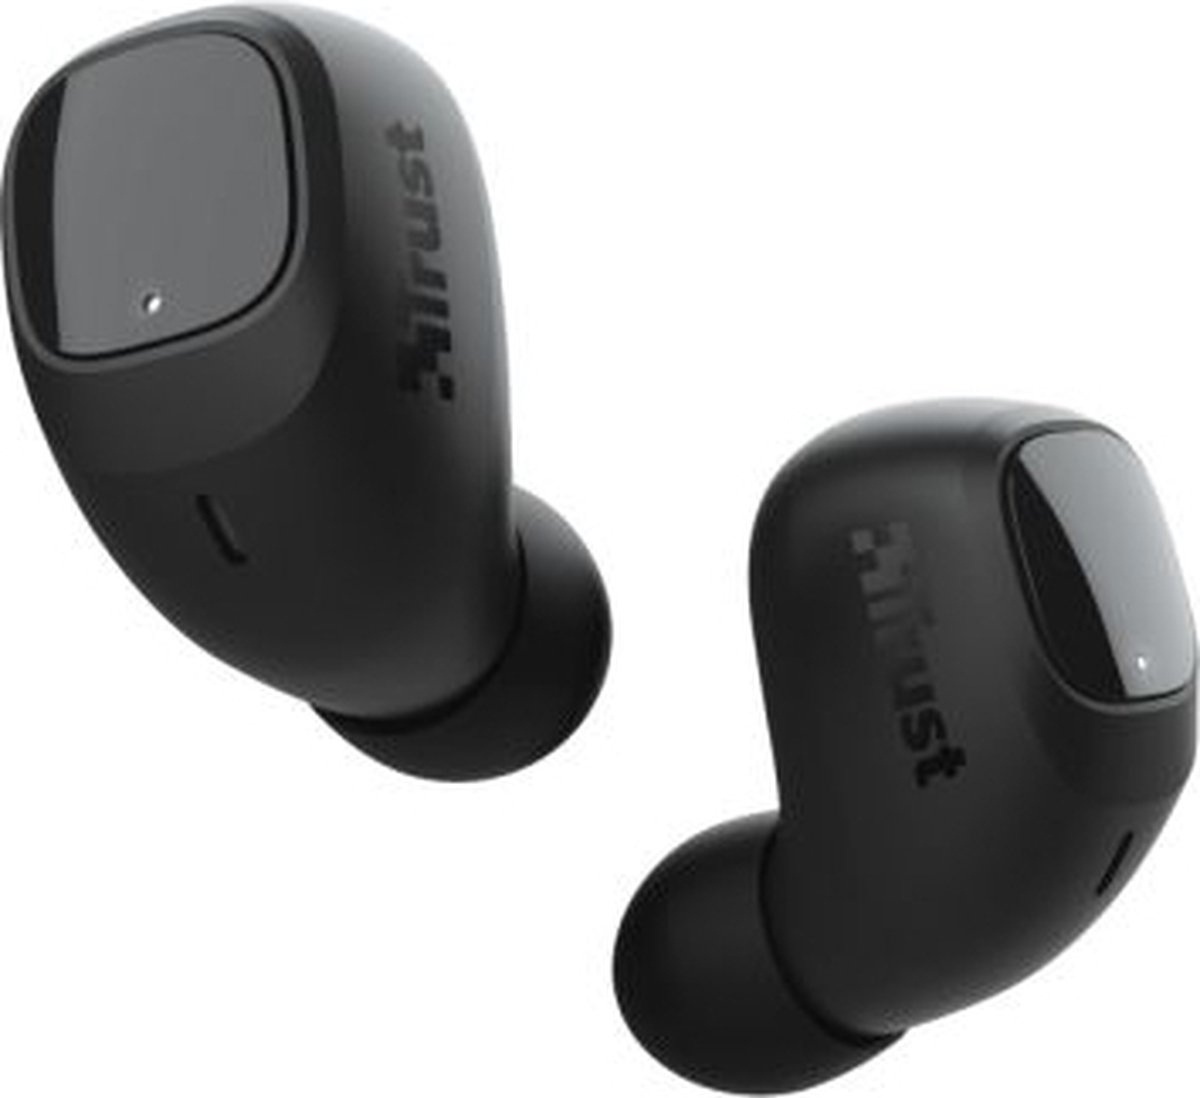 Trust Draadloze Oordopjes - Wireless Earphones - Bluetooth -Oordopjes - Wireless Earbuds - Draadloze Oortjes - IOS - Android -Zwart - 23555 GMT